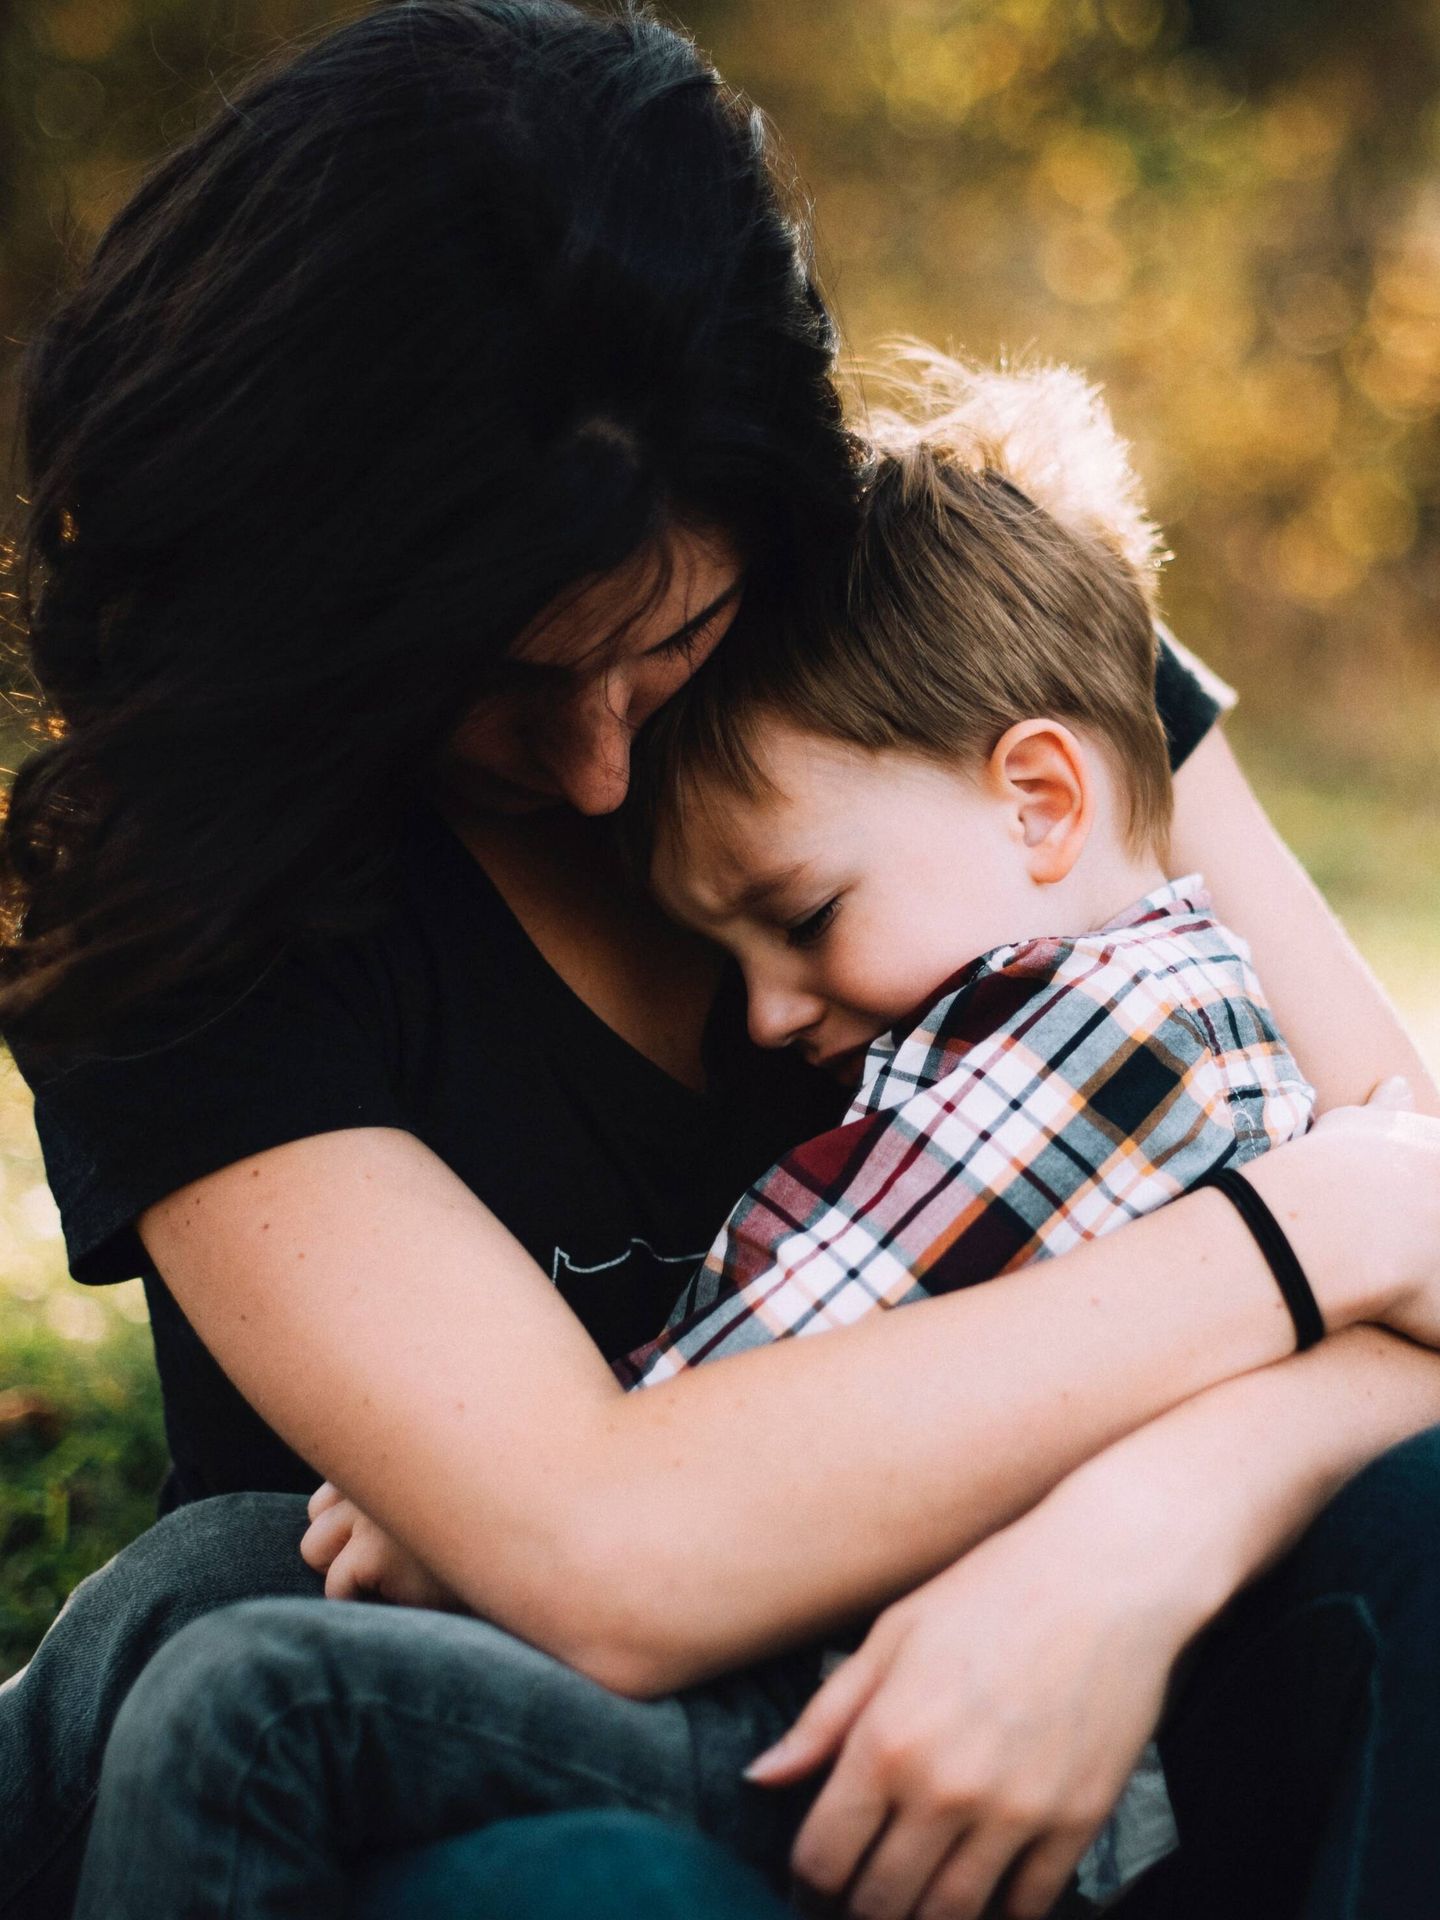 Una madre consuela a su hijo entre sus brazos. (Unsplash/Jordan Whitt)